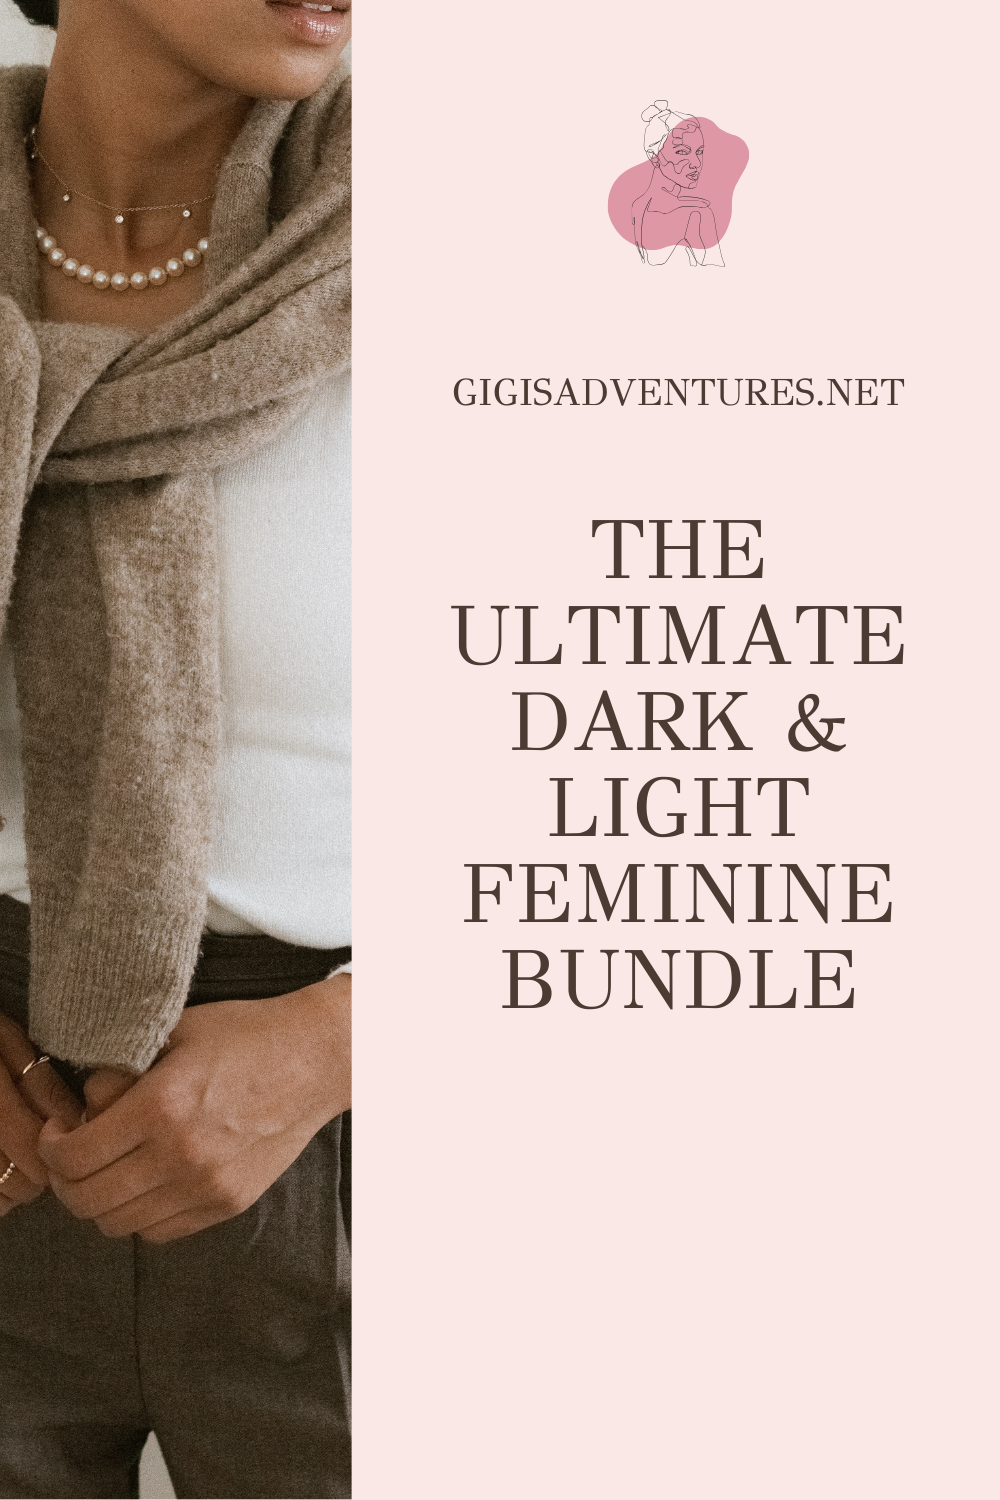 The Ultimate Dark & Light Feminine Bundle